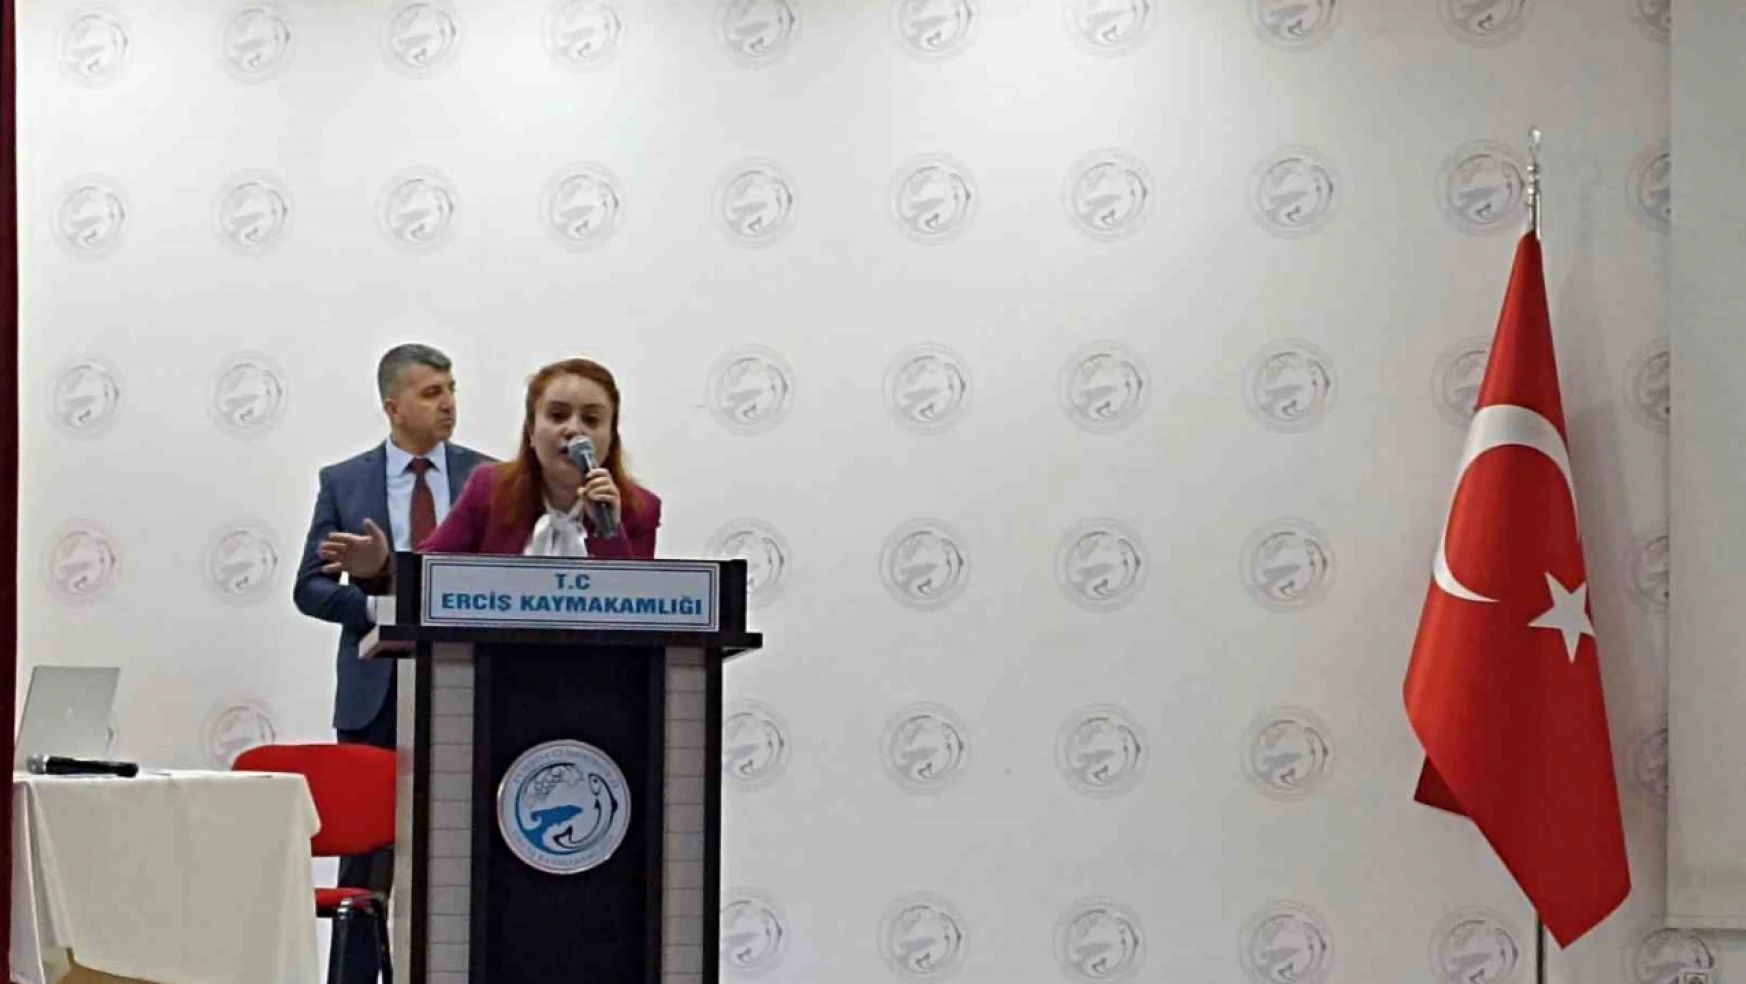 Erciş'te seçimde görev alacaklar için eğitim toplantısı yapıldı